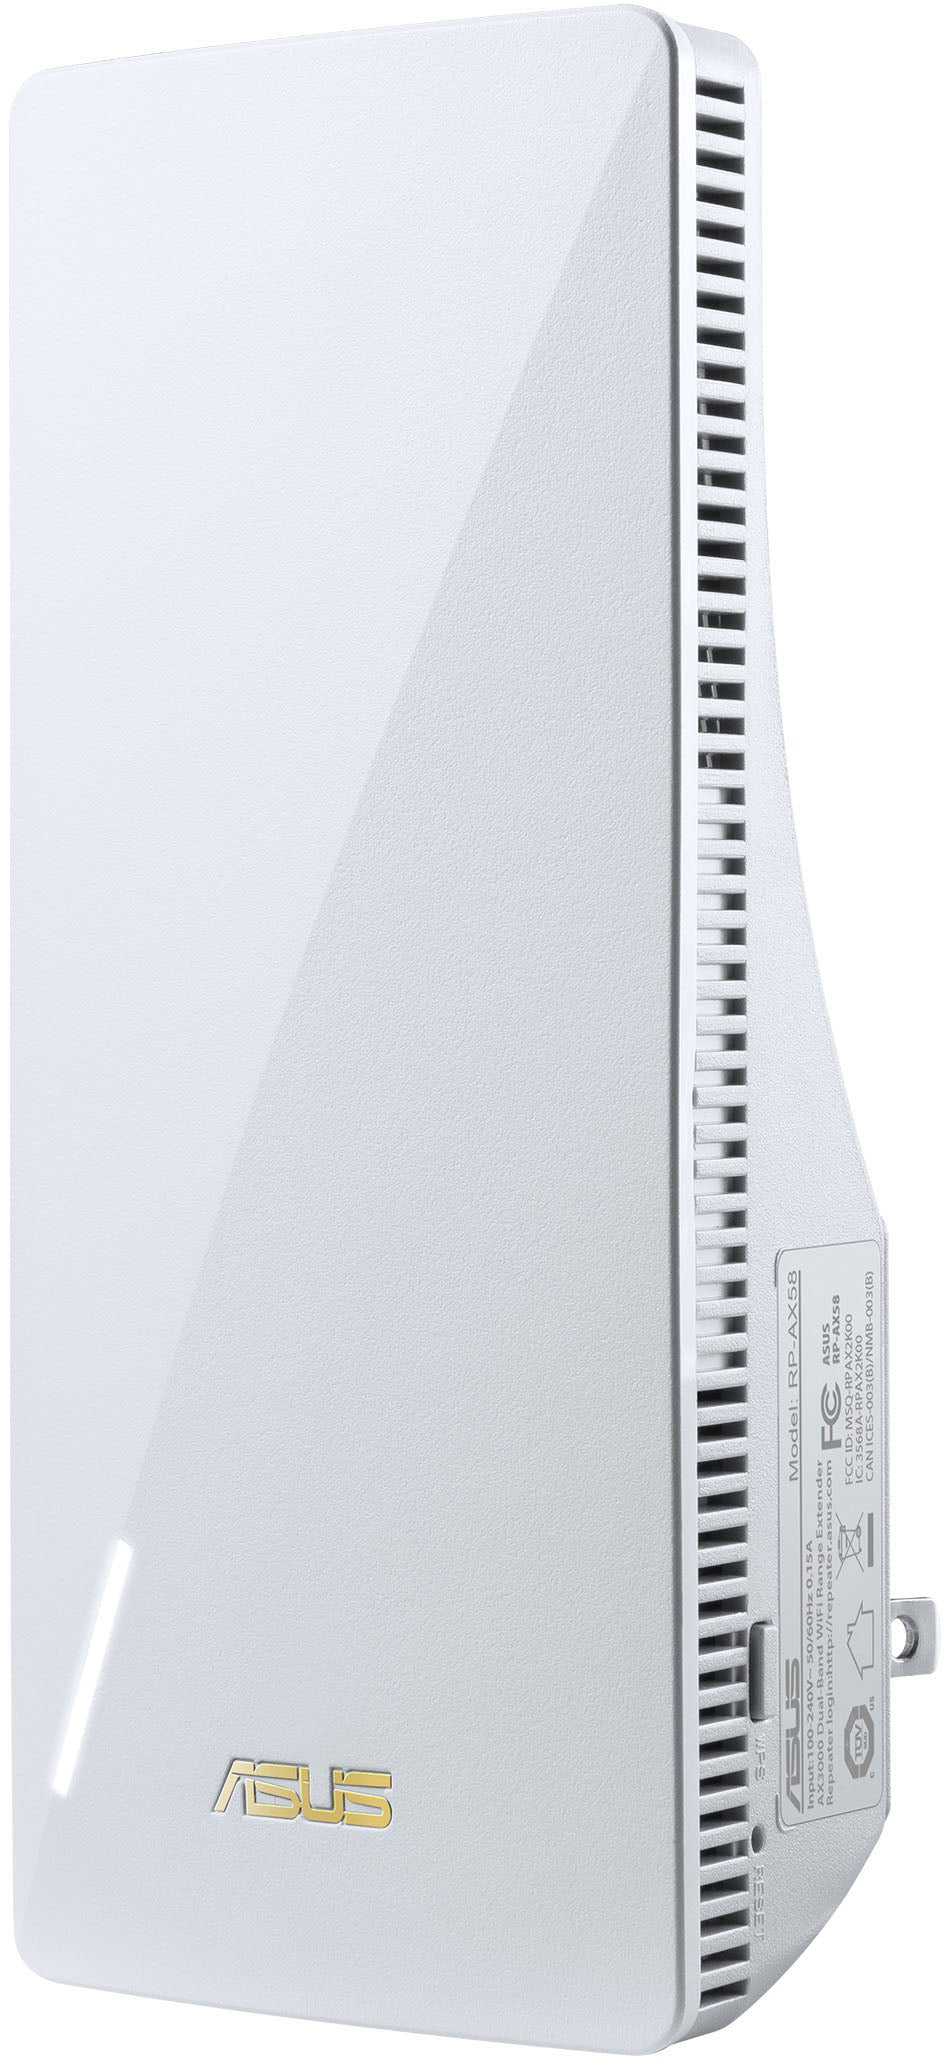 ASUS - AX3000 WiFi 6(802.11ax) AiMesh Router_1